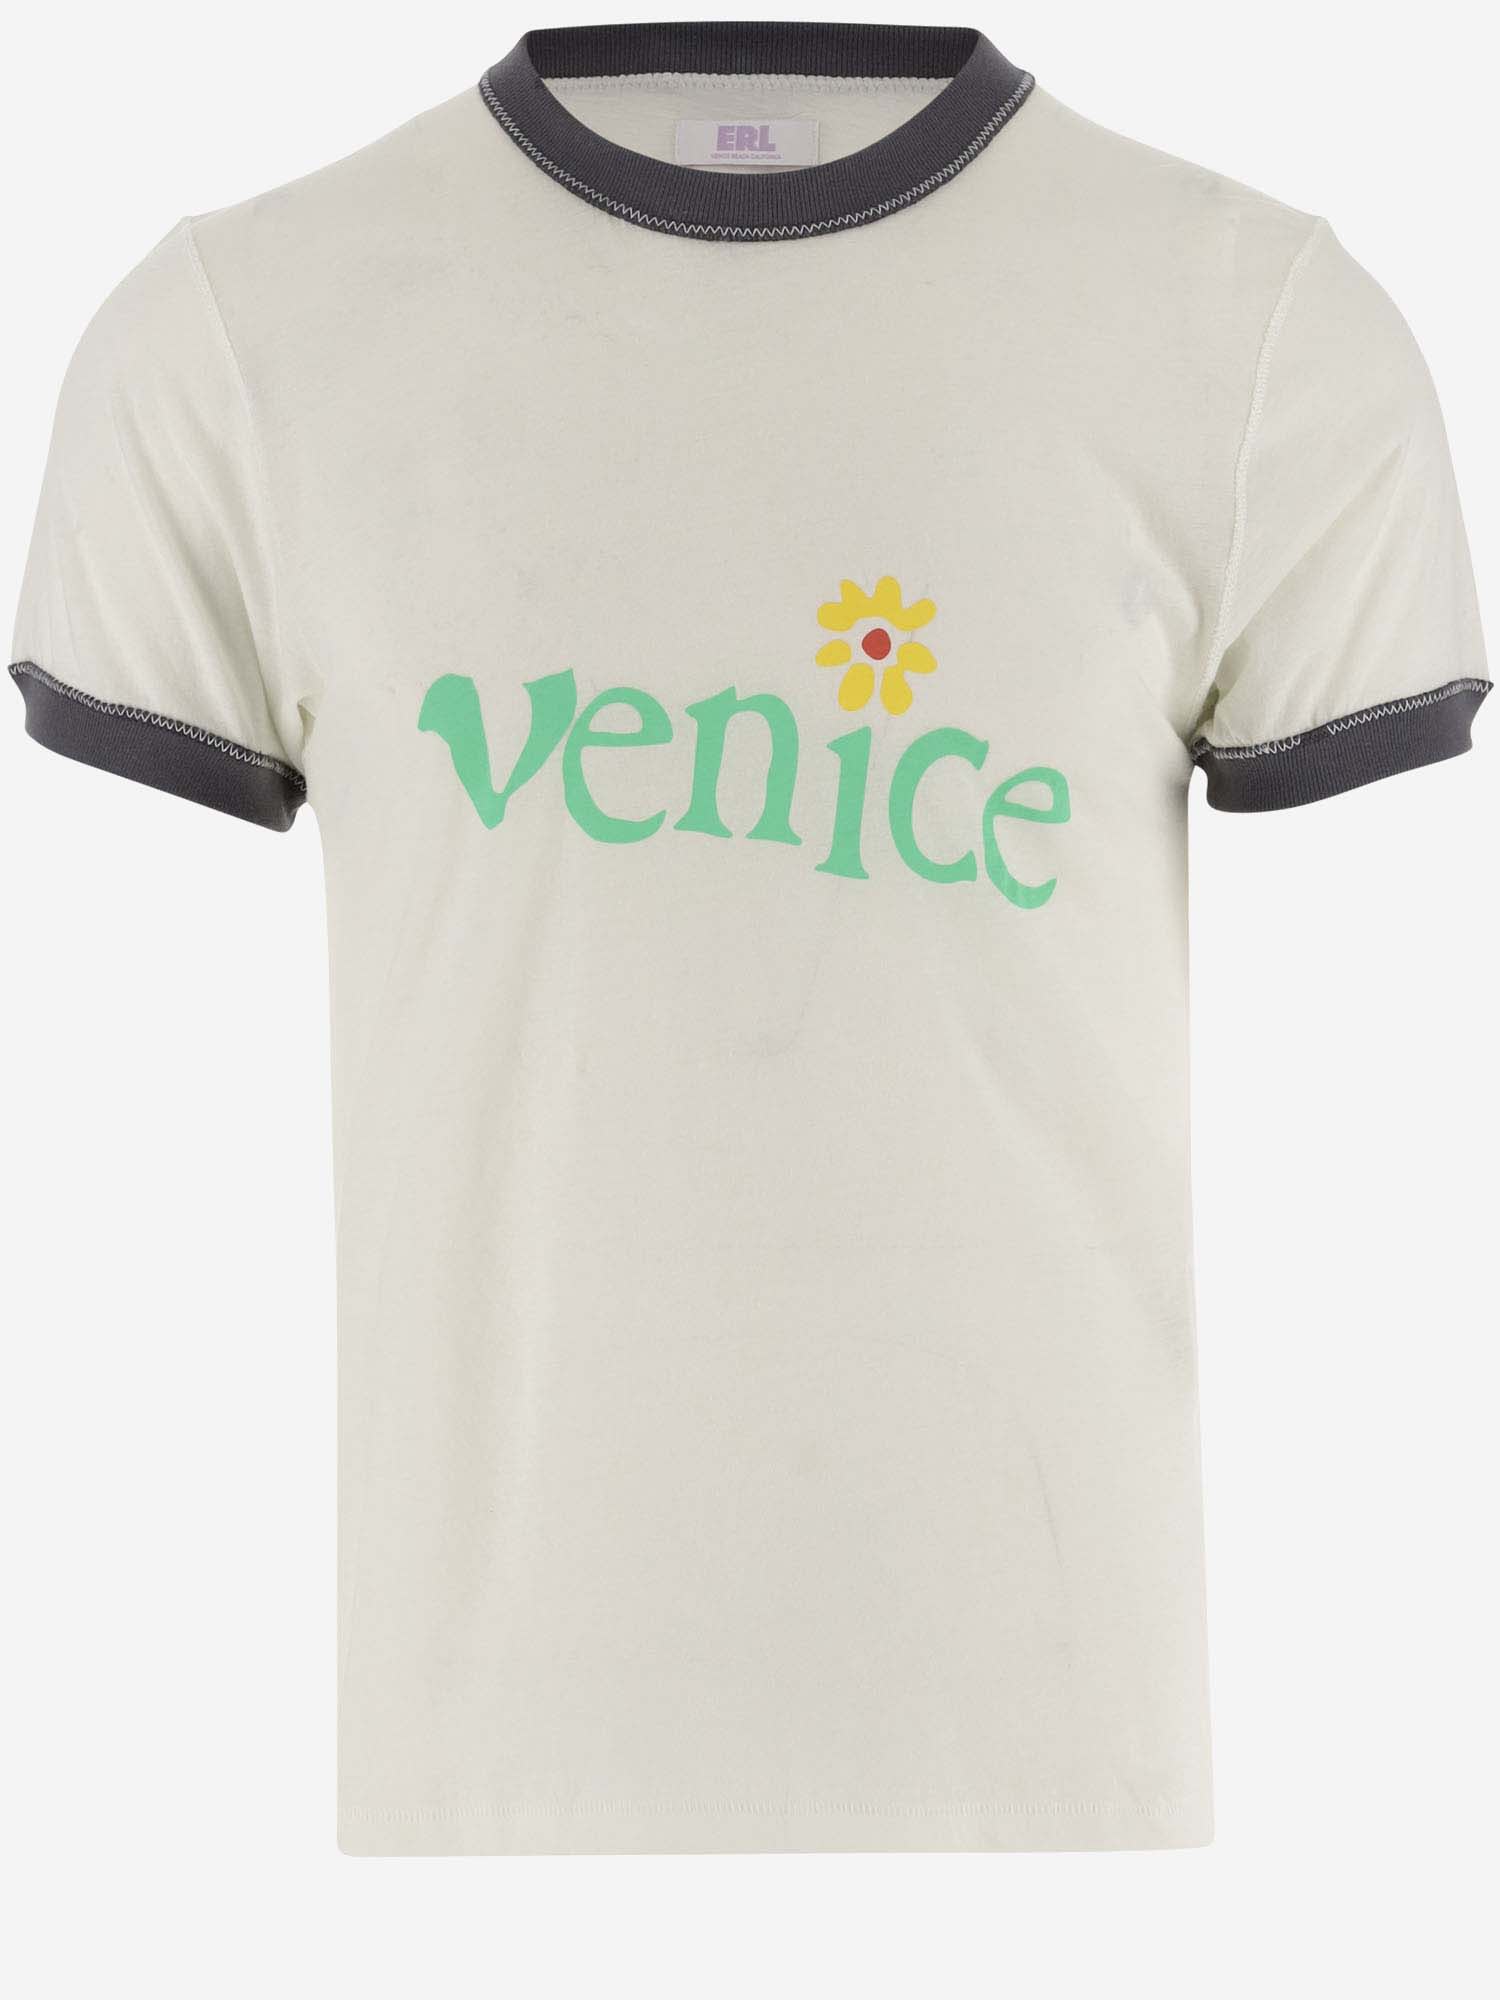 Cotton Venice T-shirt